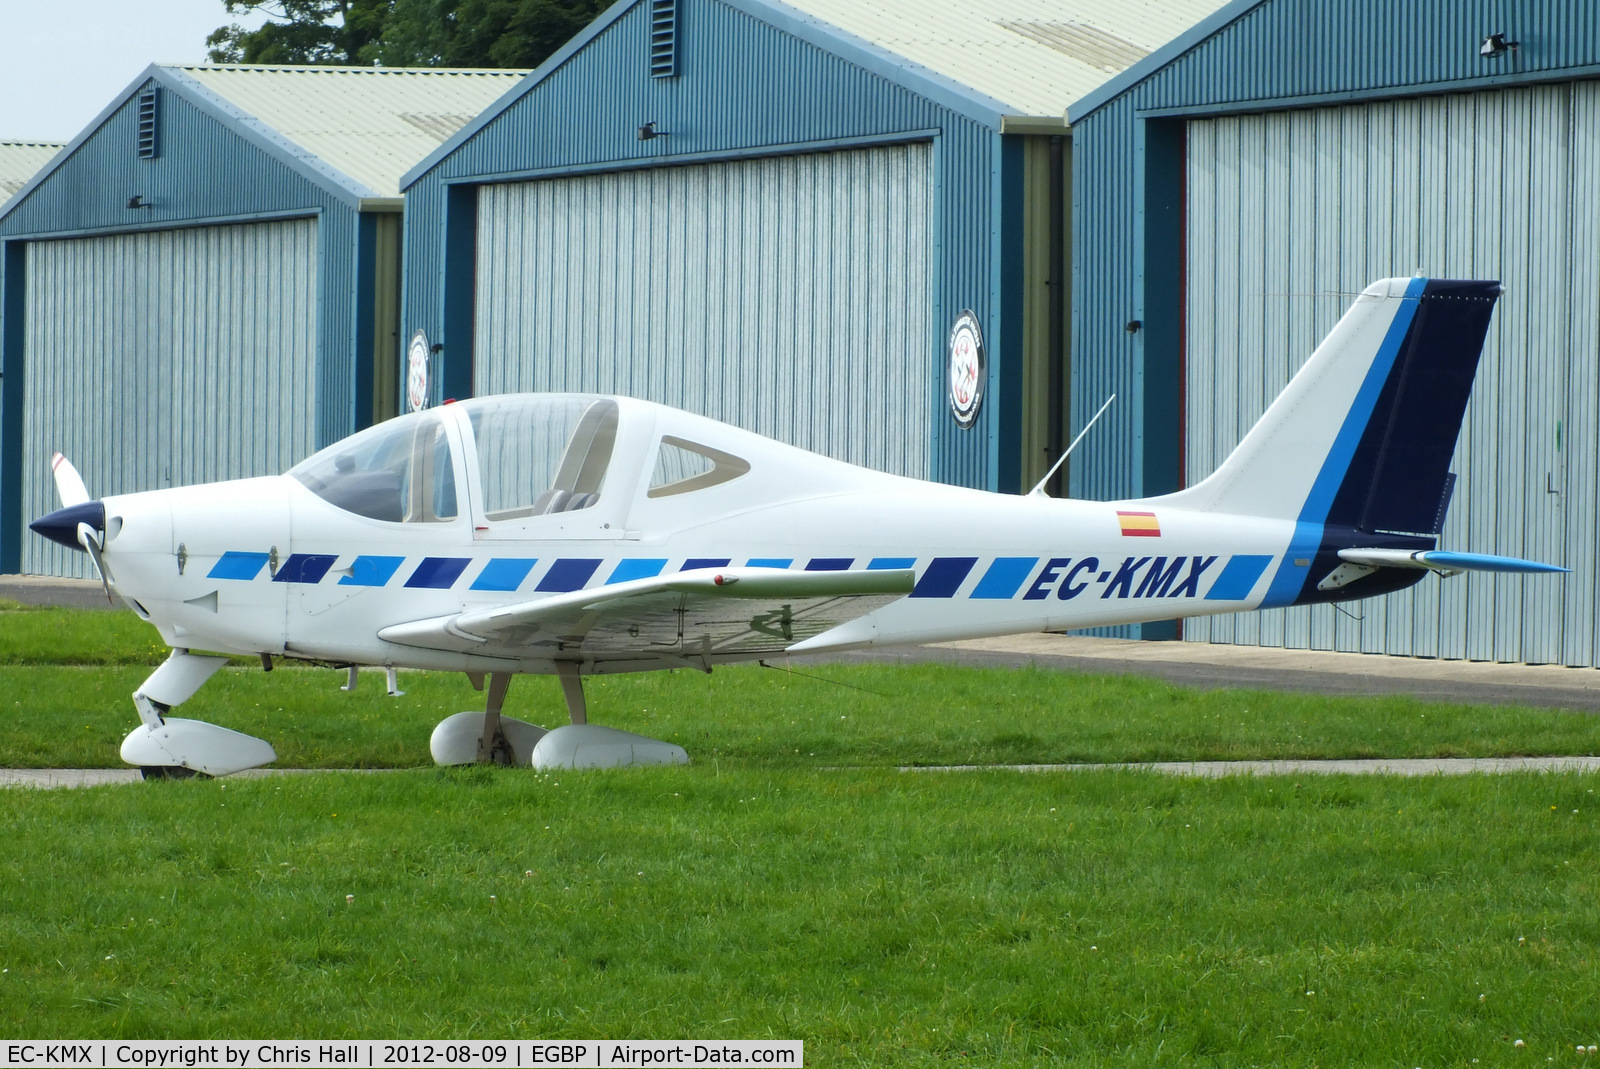 EC-KMX, 2007 Tecnam P2002-JF Sierra C/N 077, being used by one of the Kemble flying schools